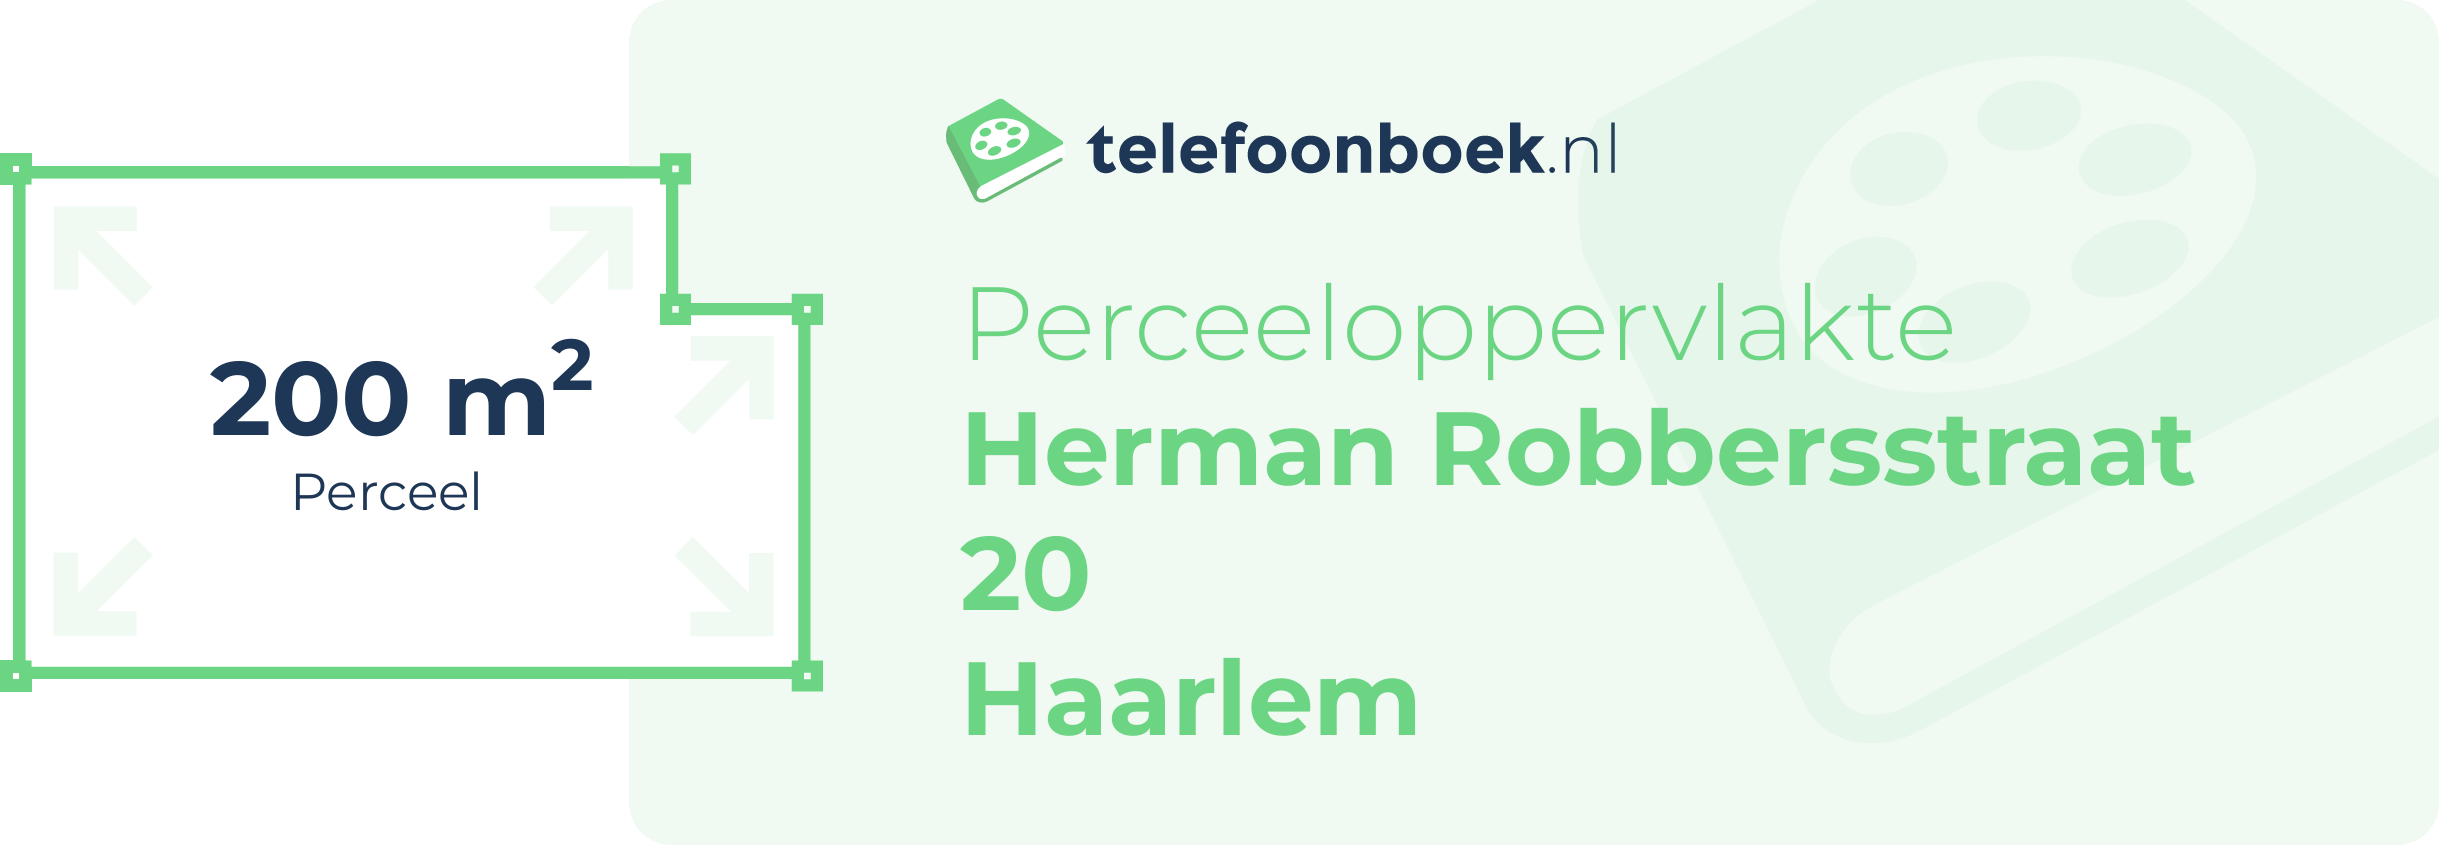 Perceeloppervlakte Herman Robbersstraat 20 Haarlem